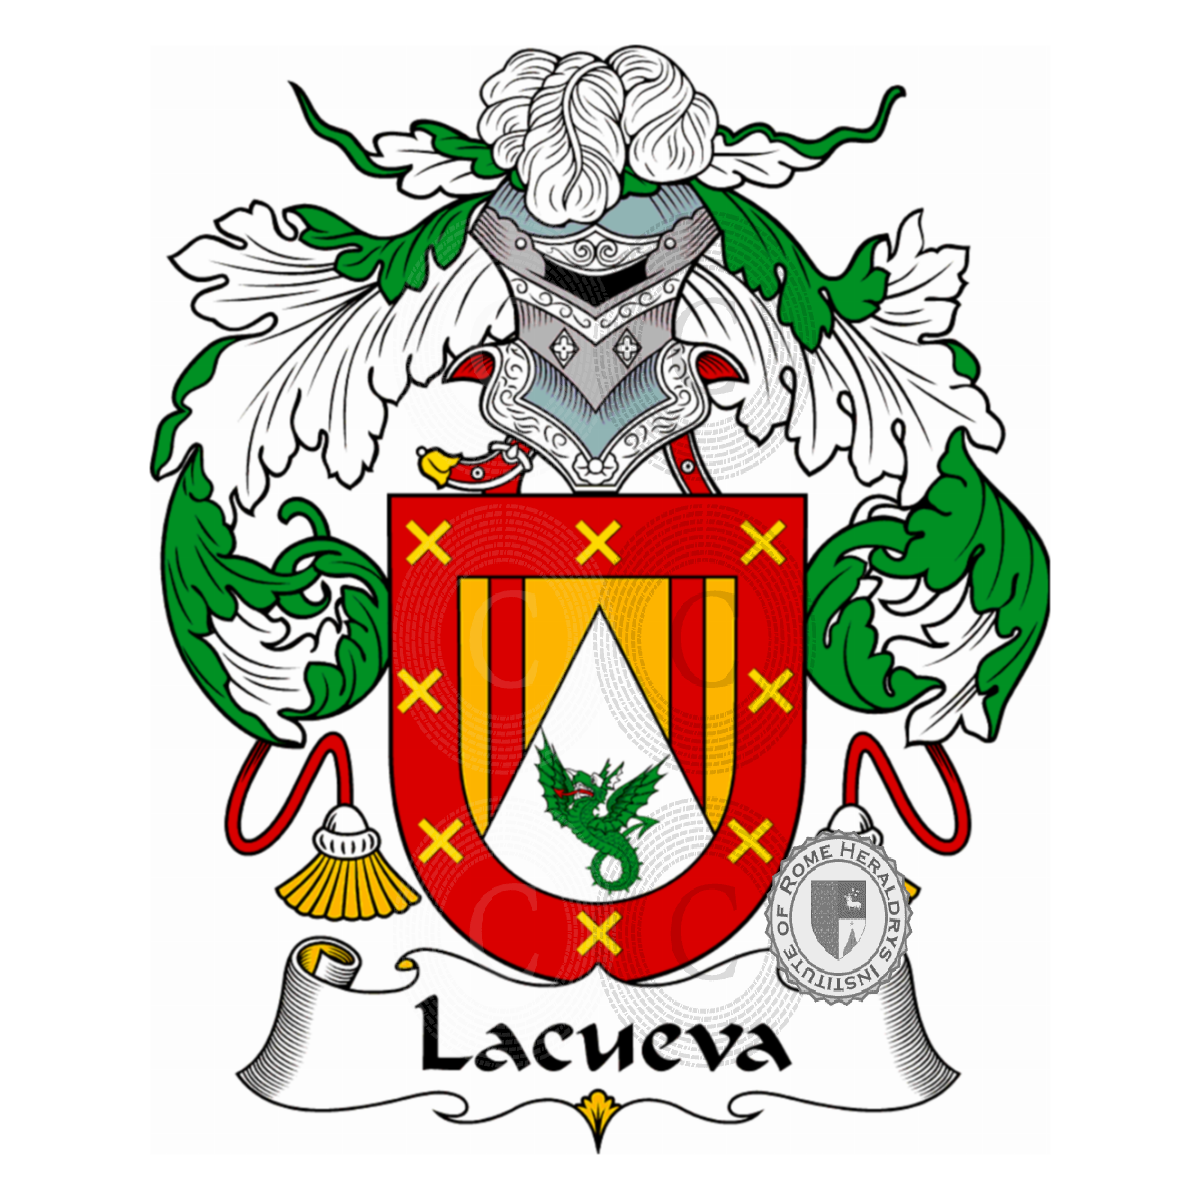 Wappen der FamilieLacueva, La Cueva